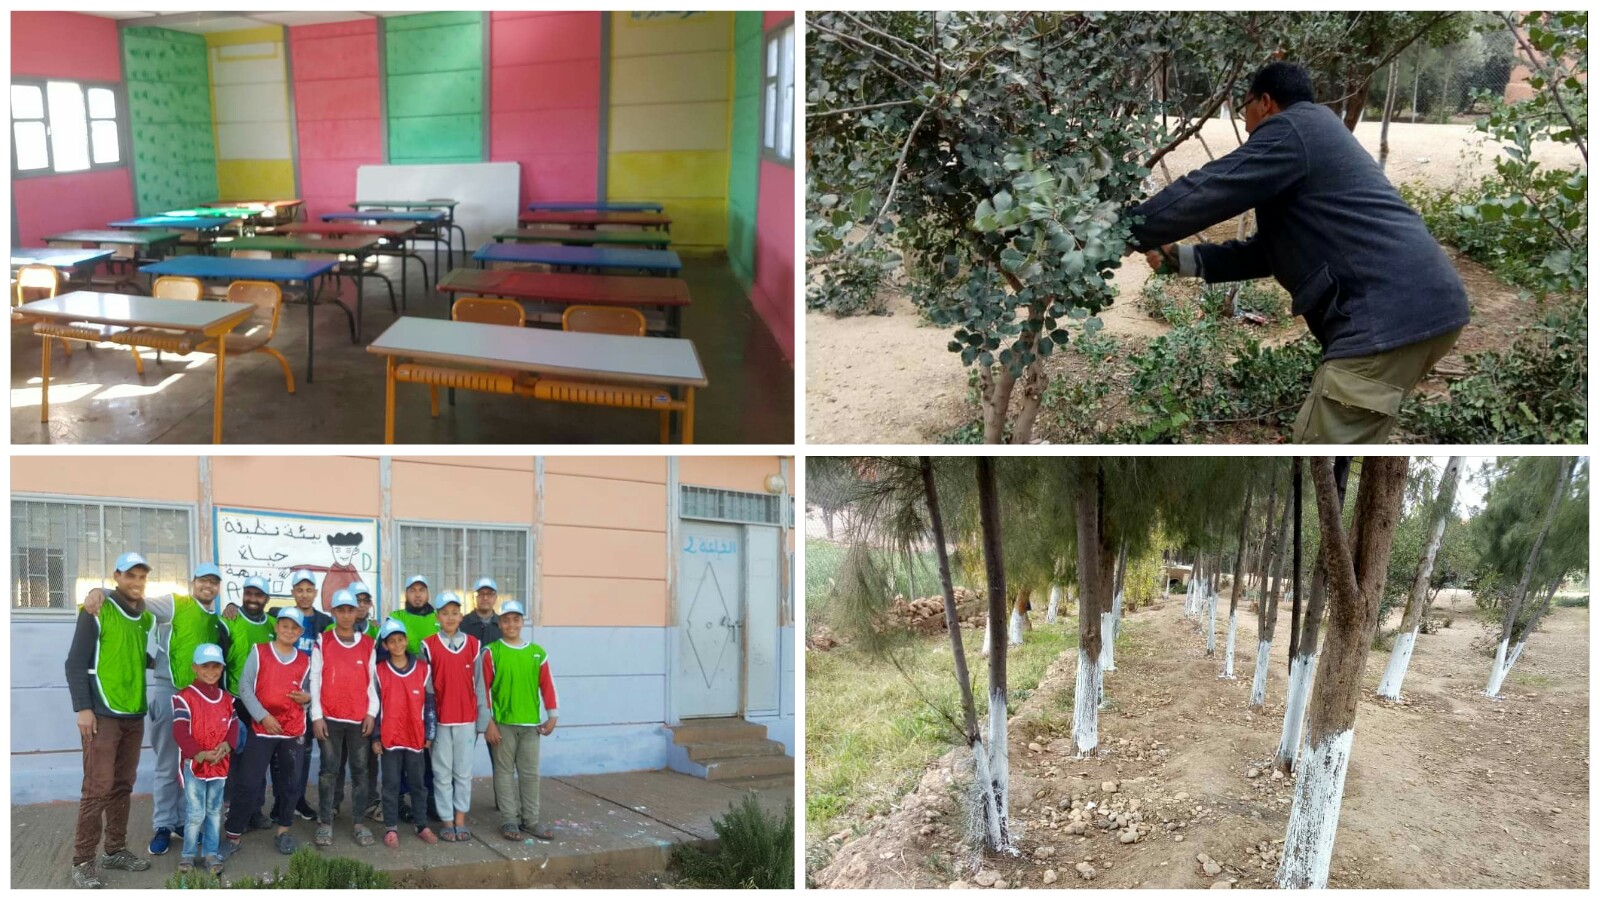 جمعية الوفاق للتنمية بأولاد يوسف تنظم حملة نظافة وصباغة بوحدة مدرسية -الصور-